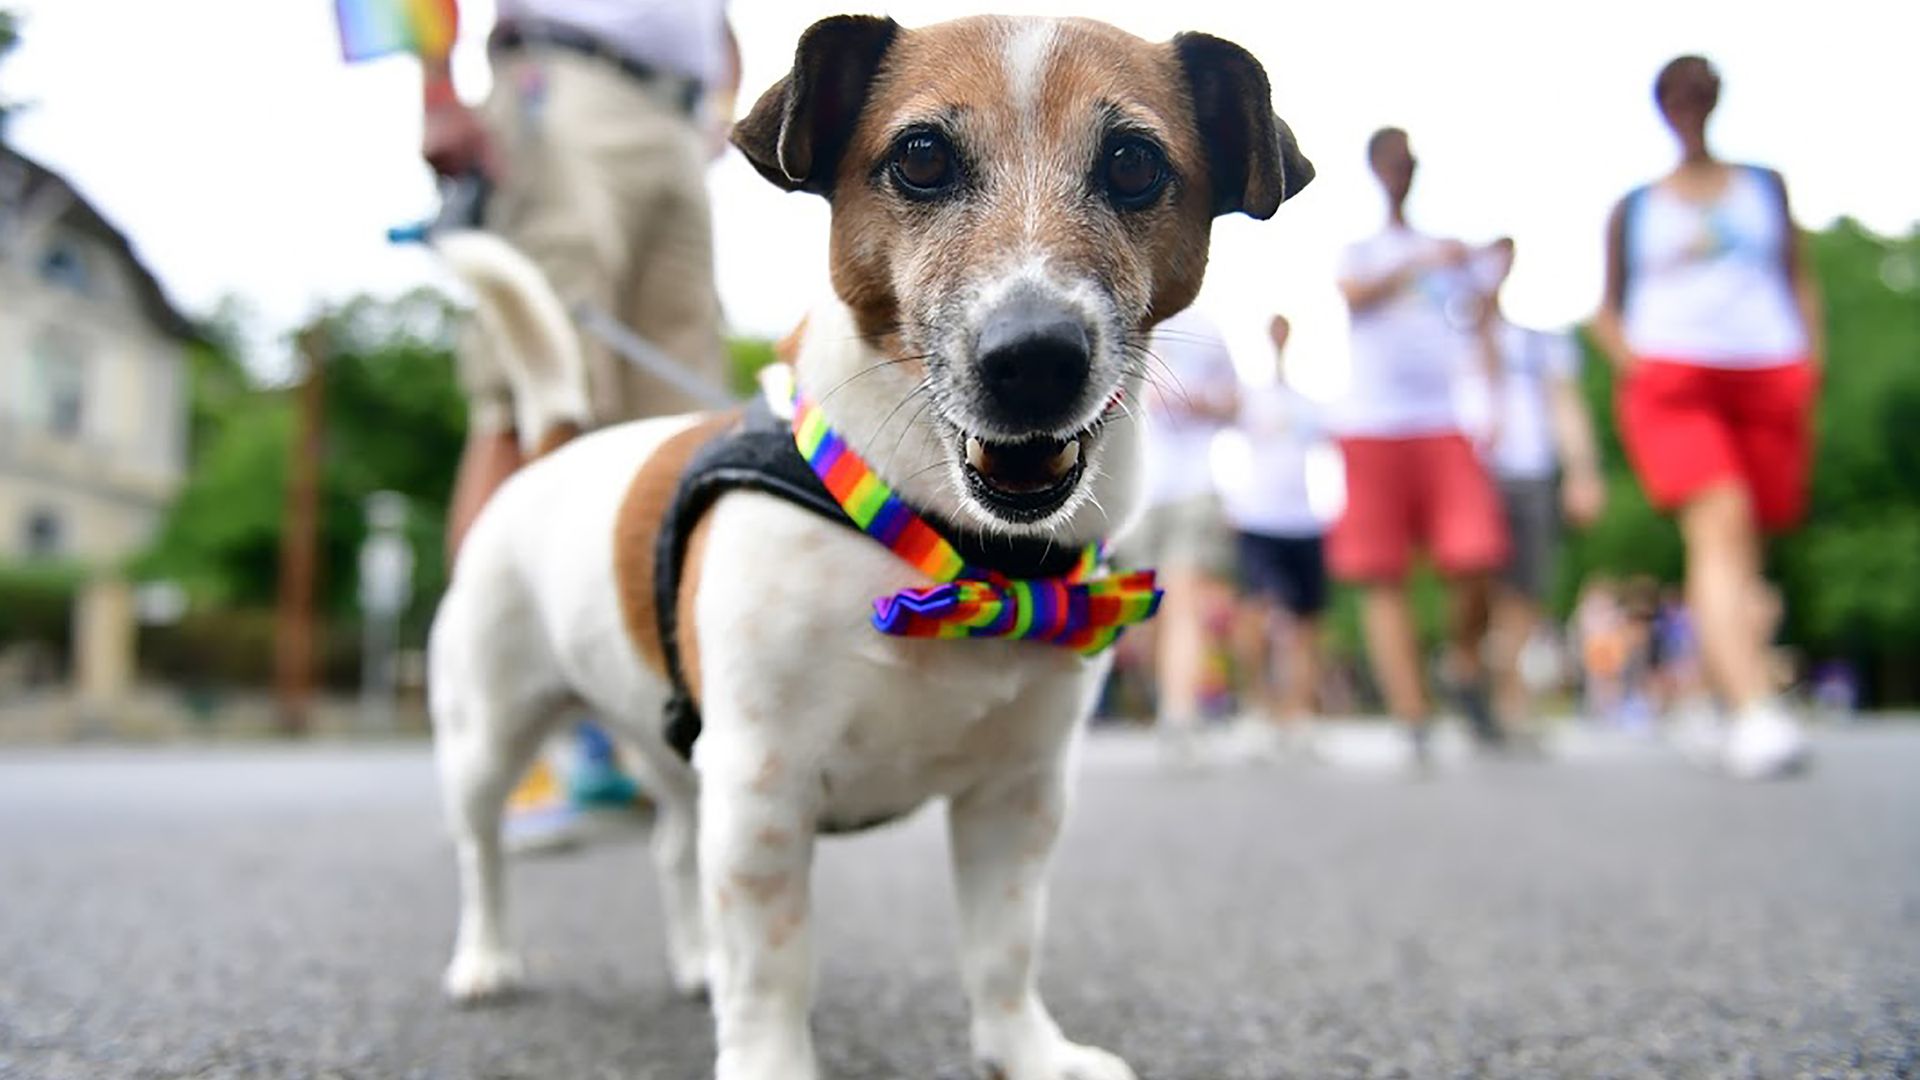 a dog wearing a rainbow bowtie